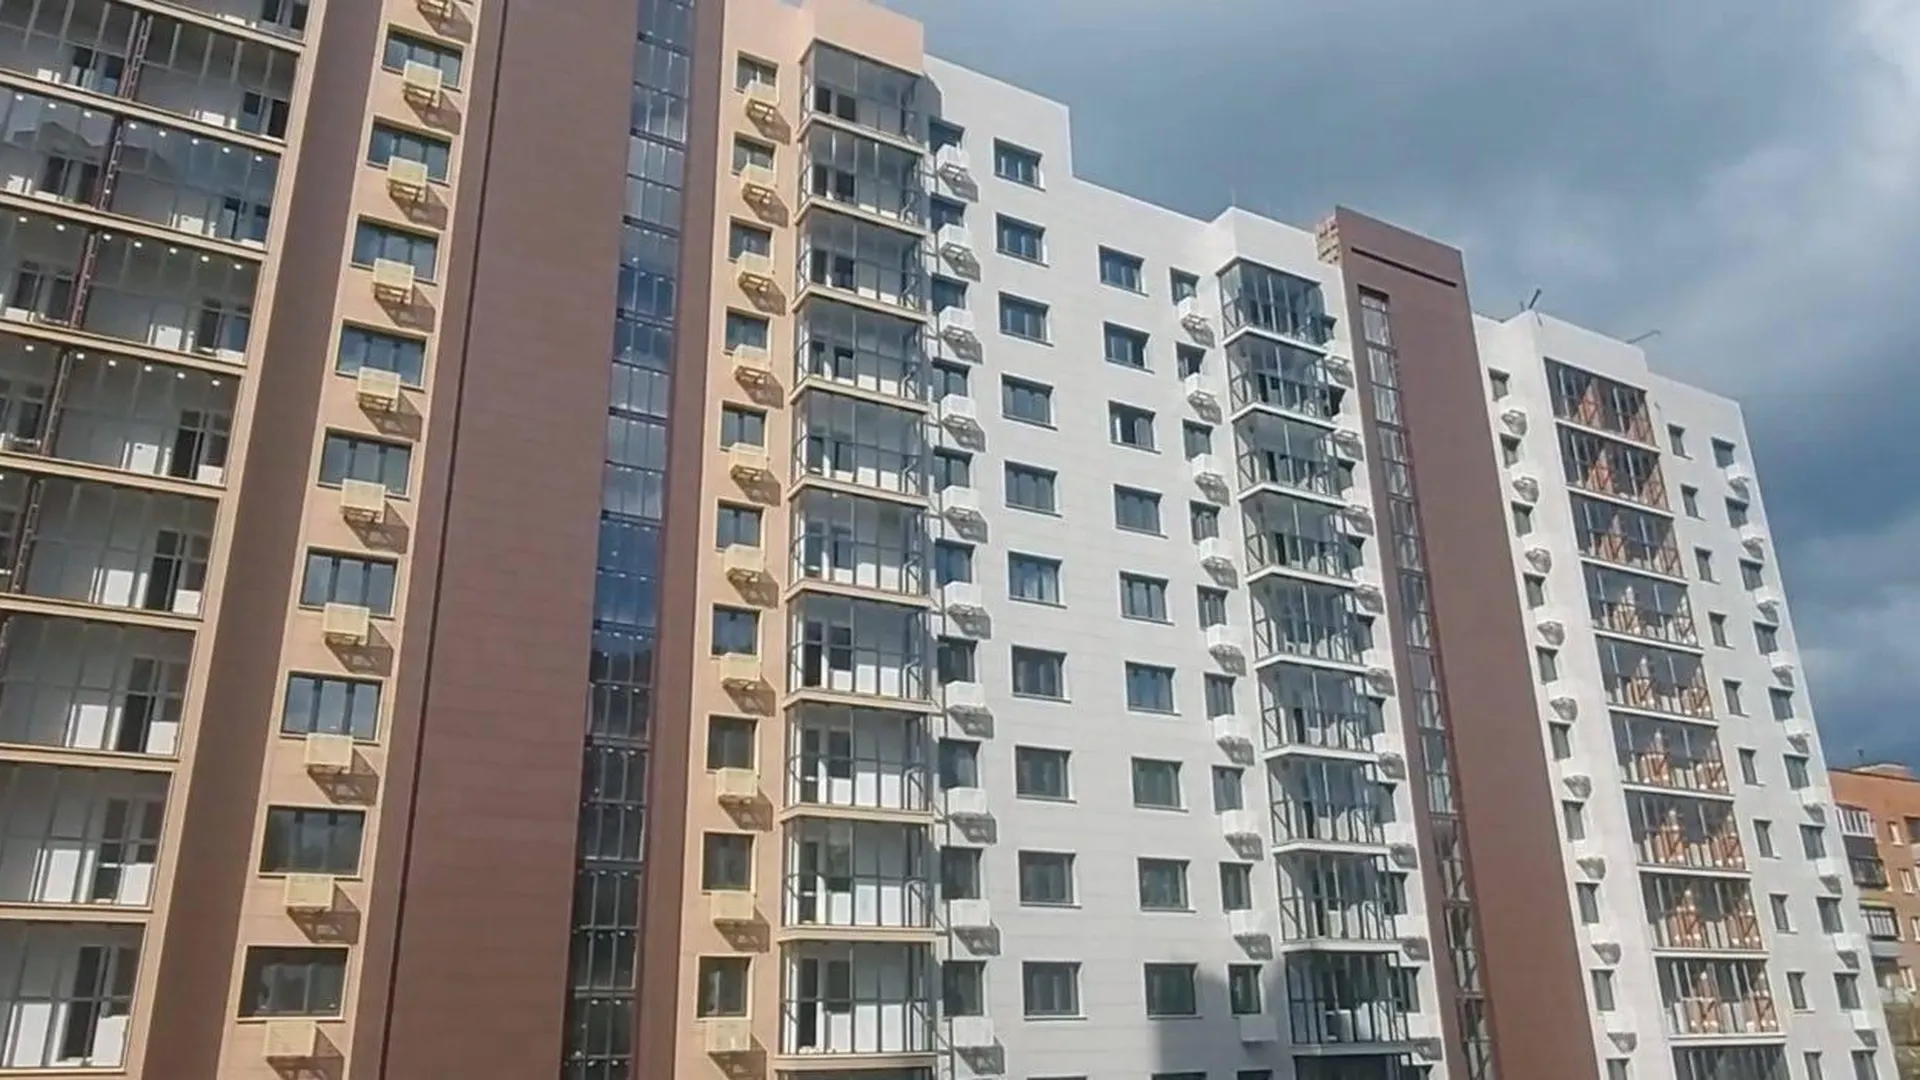 Жилой дом на Лесной улице в Красногорске достроят к осени